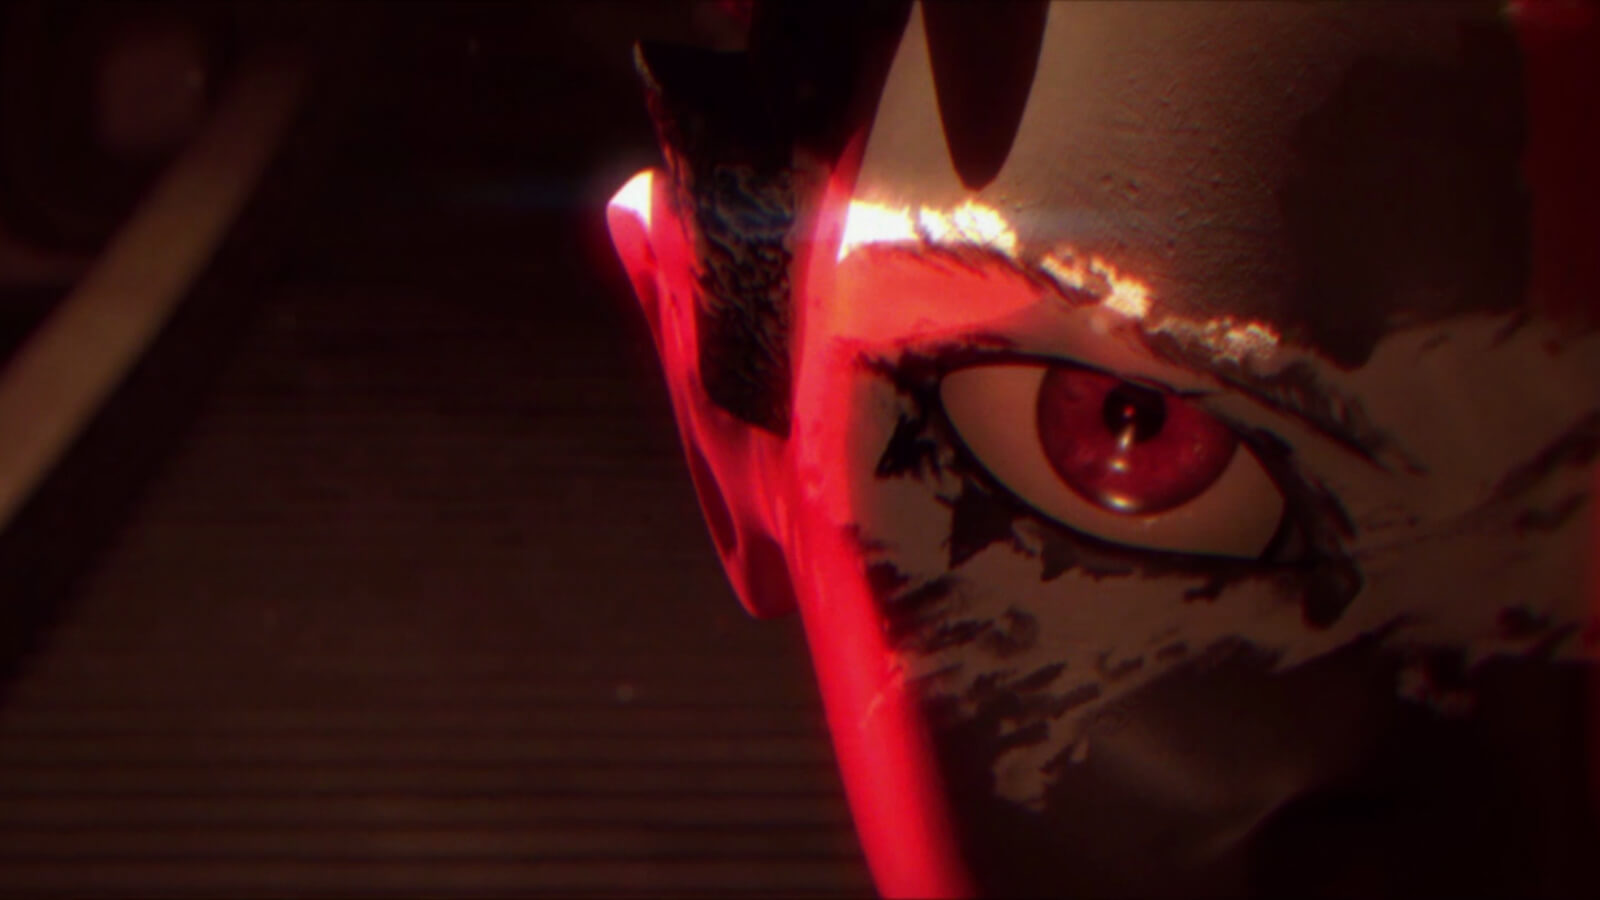 Primer plano extremo de una cara en la mitad derecha de la imagen, incluido un ojo y una oreja iluminados con luz roja.